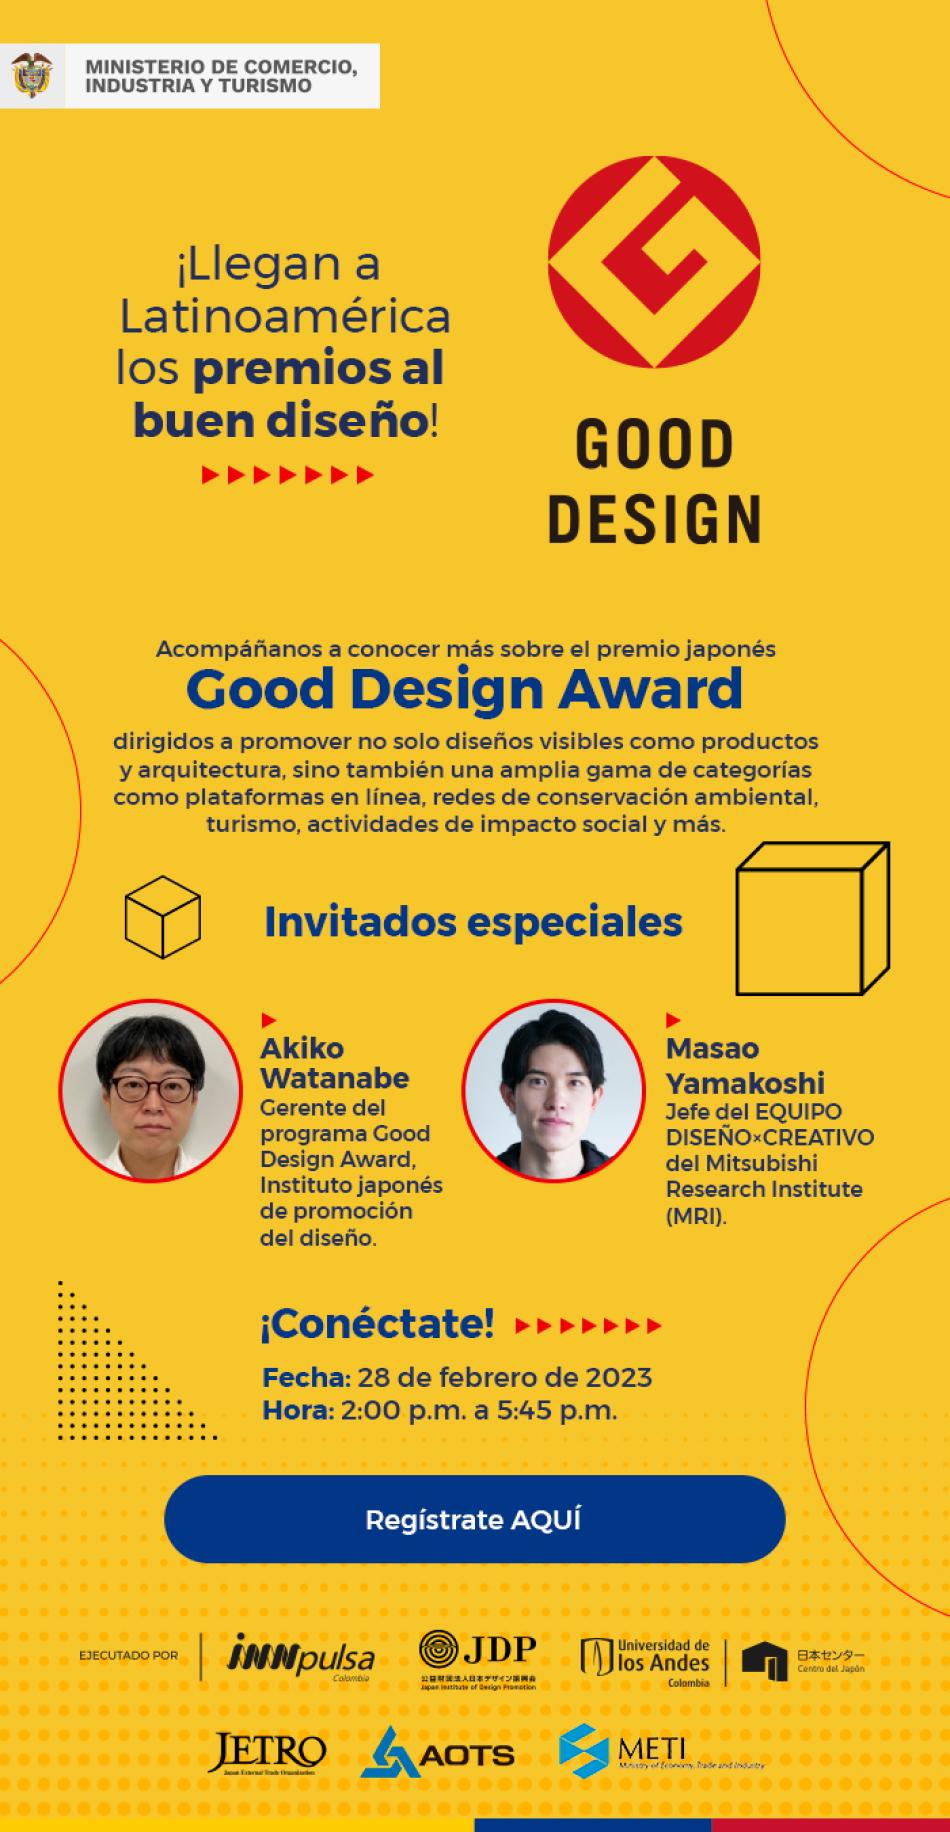 Instituto japonés de promoción del diseño